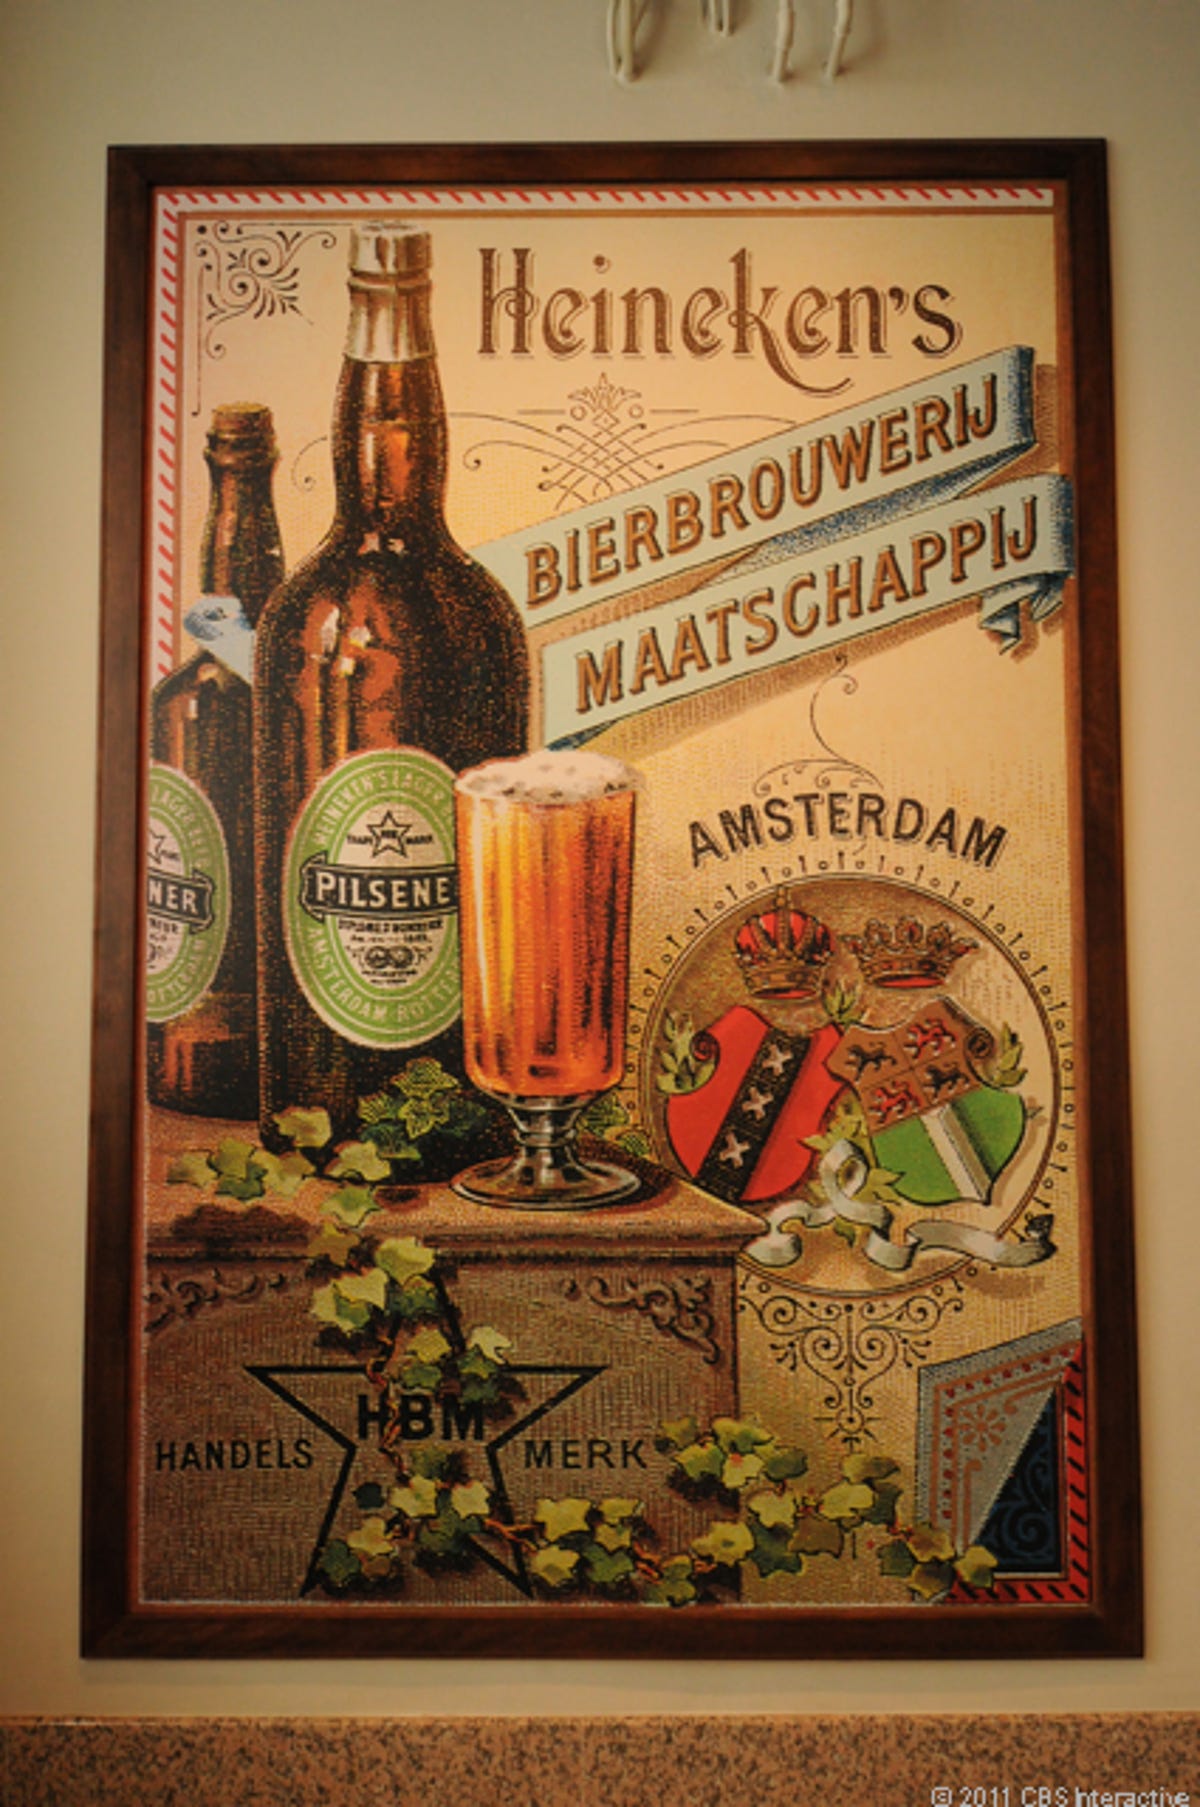 Bierbrouwerij_Maatschappij_poster.jpg